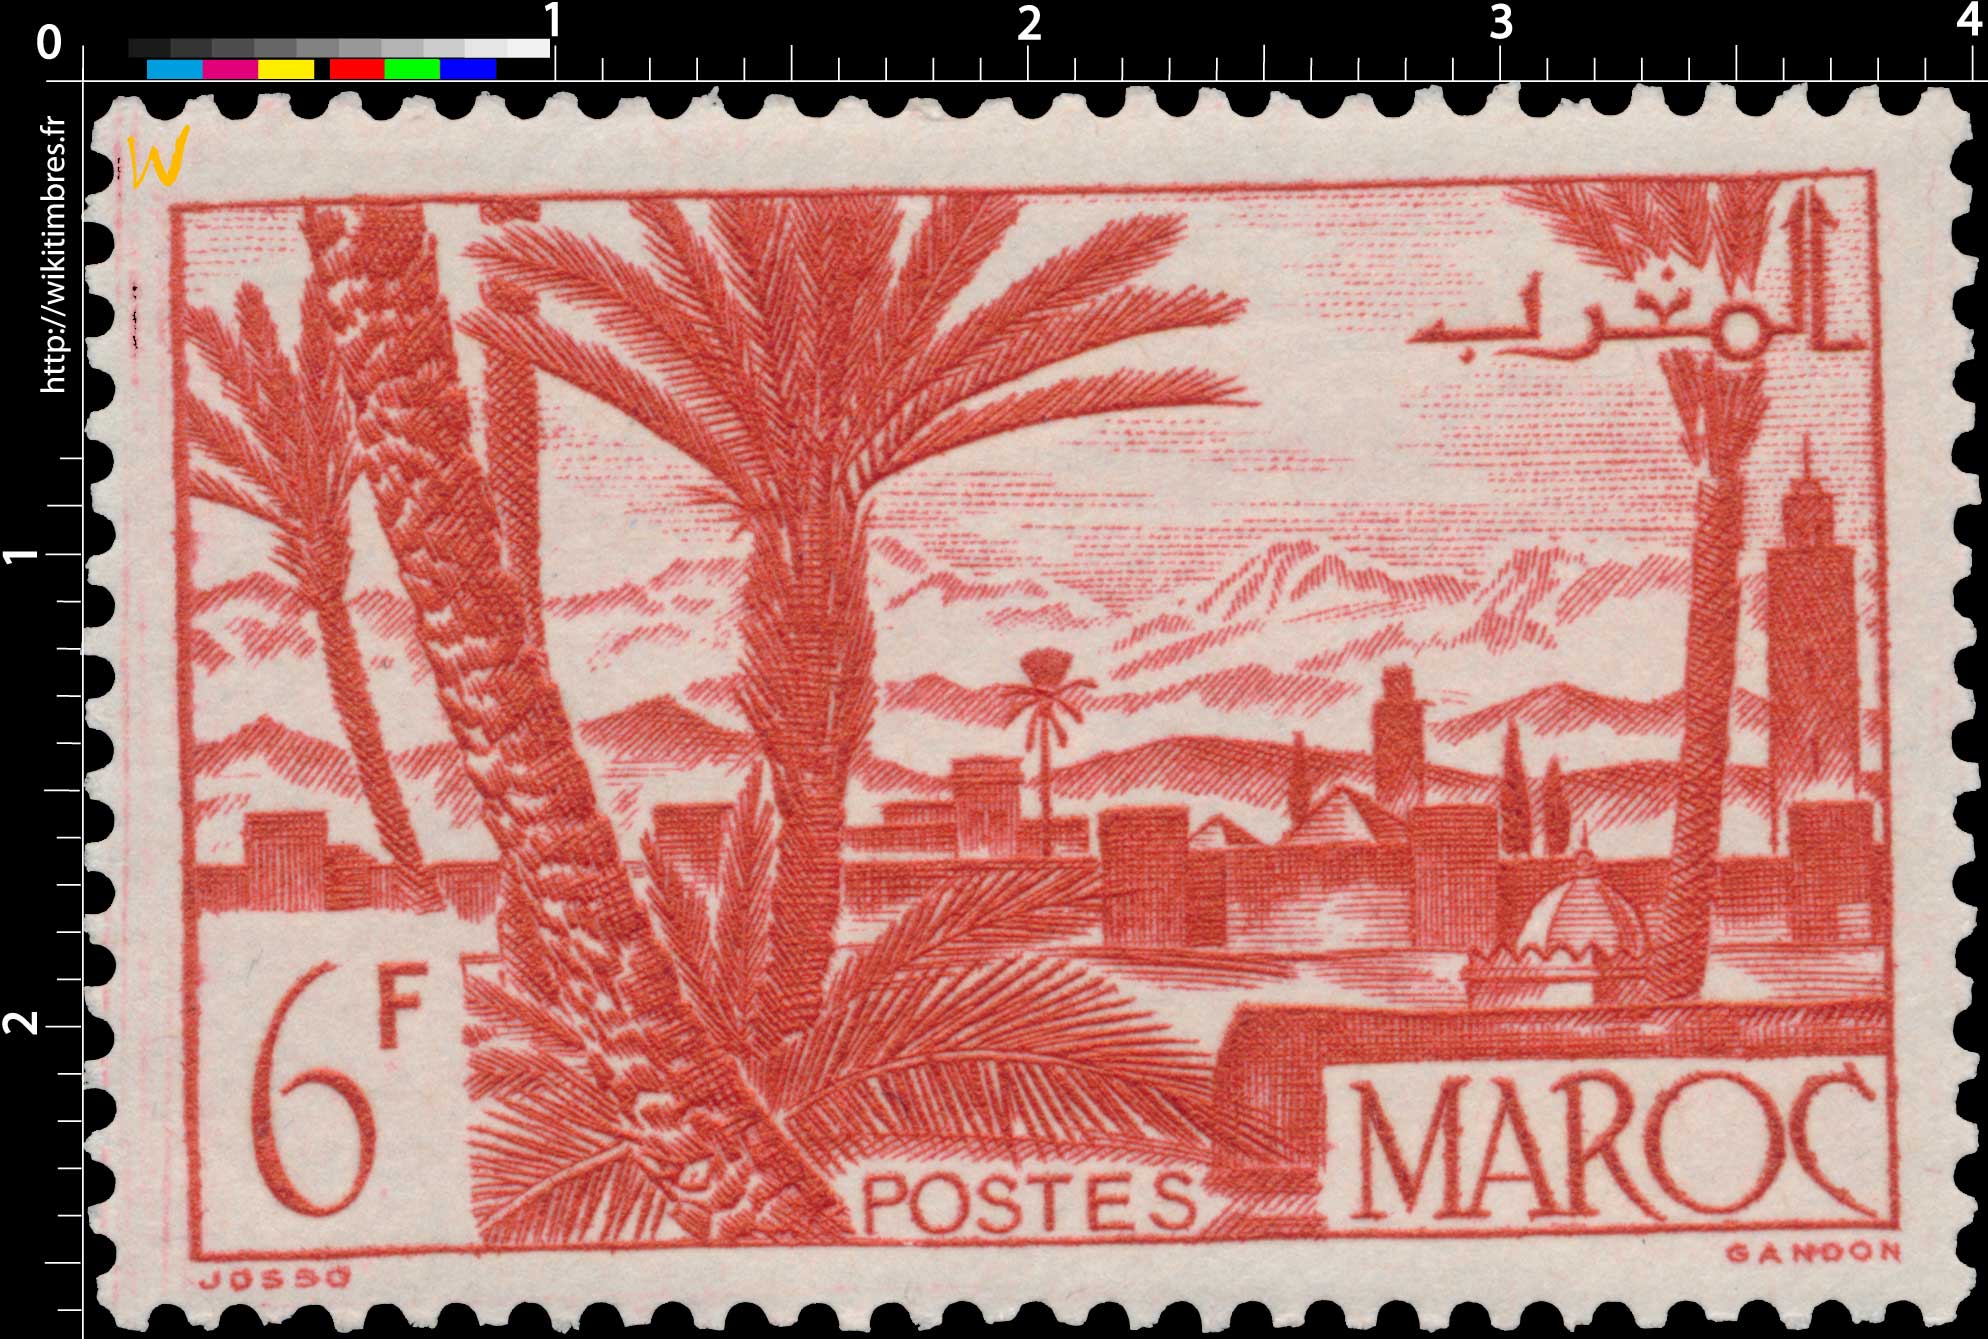 1947 Maroc - Oasis